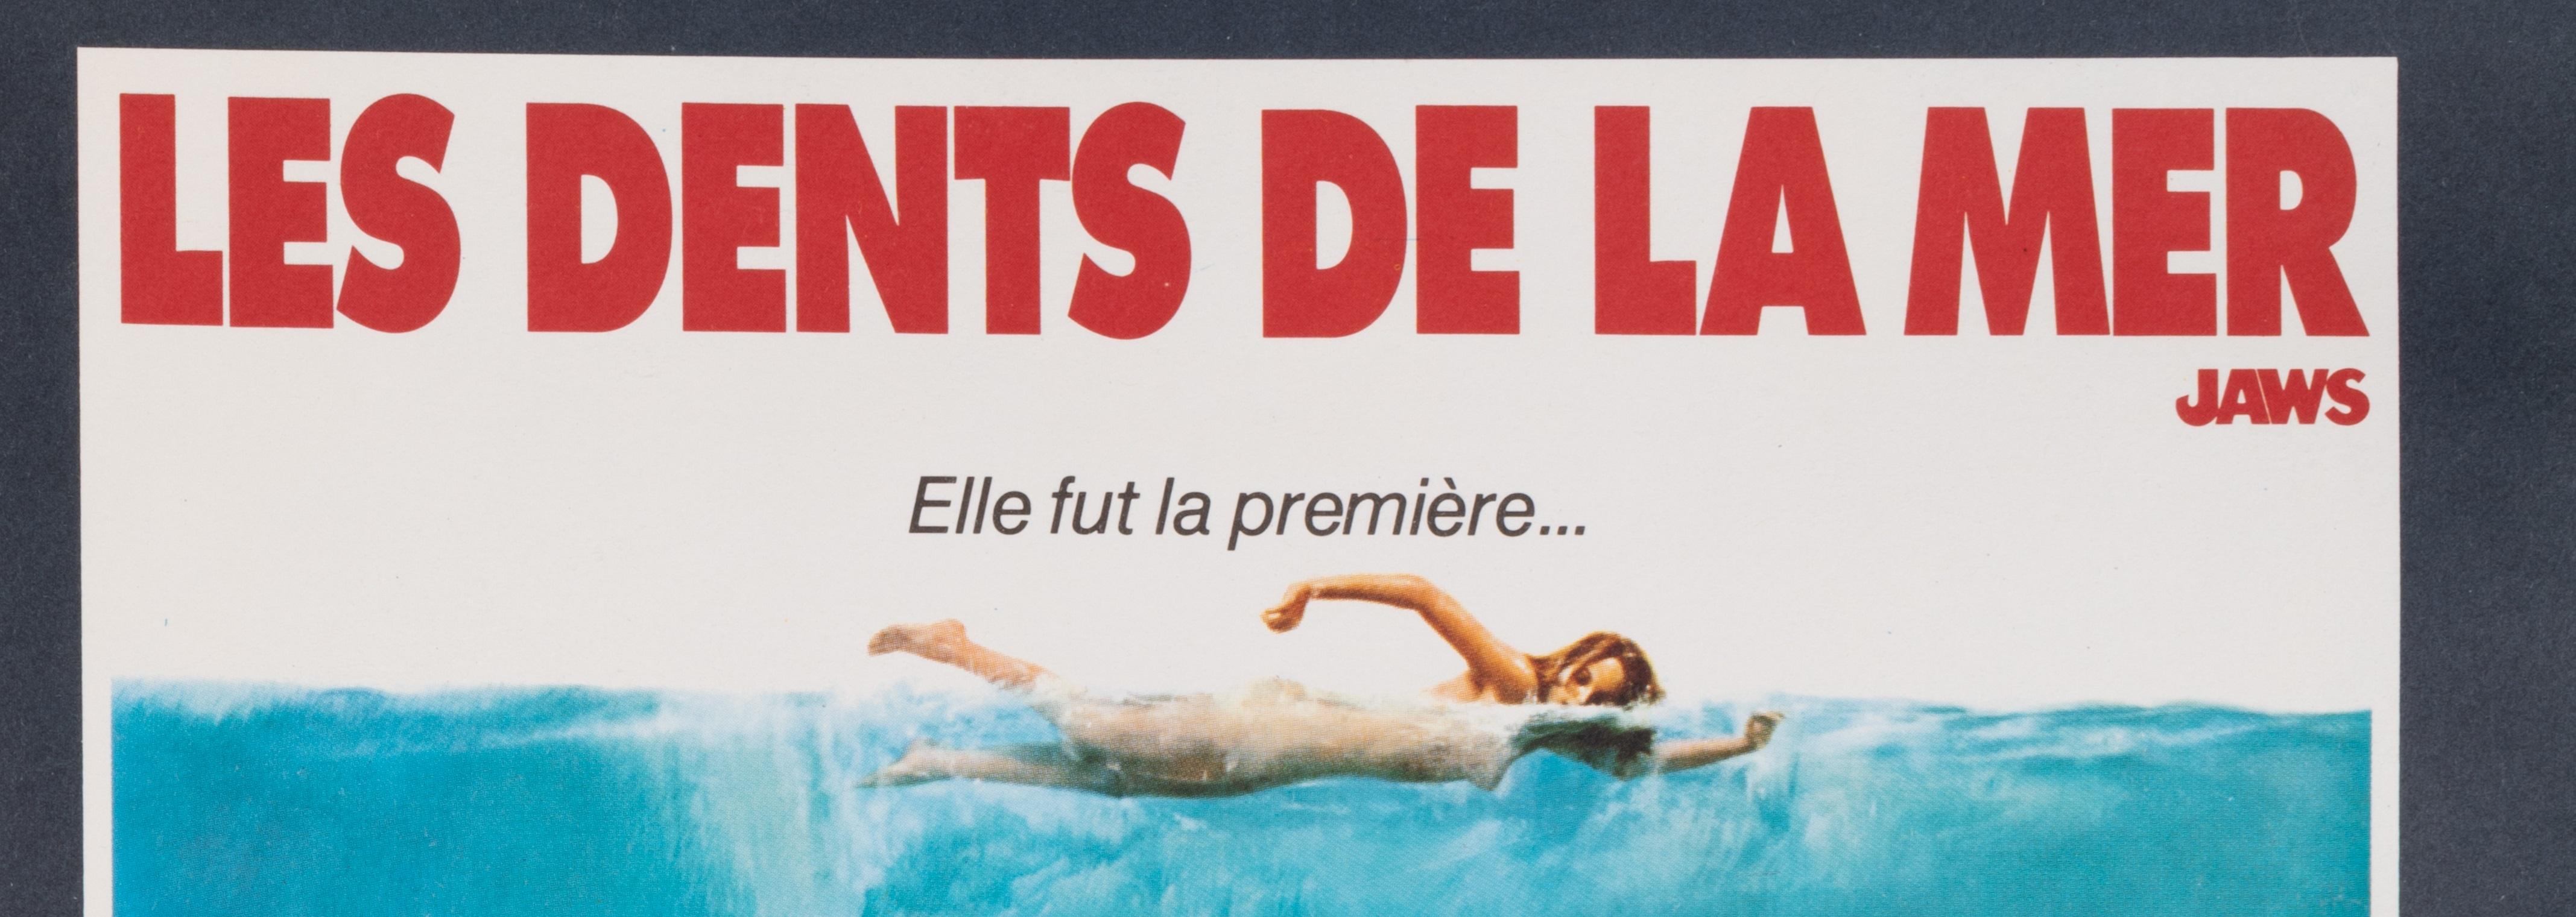 Affiche originale du film d'horreur Les Dents de la mer, créée vers 1975.

Artistics : Anonyme
Titre : Les dents de la mer - Jaws
Date : vers 1975
Taille (l x h) : 15.7 x 20.9 in / 40 x 53 cm
Imprimante : Ste EXPL . Ets LALANDE COURBET 91 WISSOUS